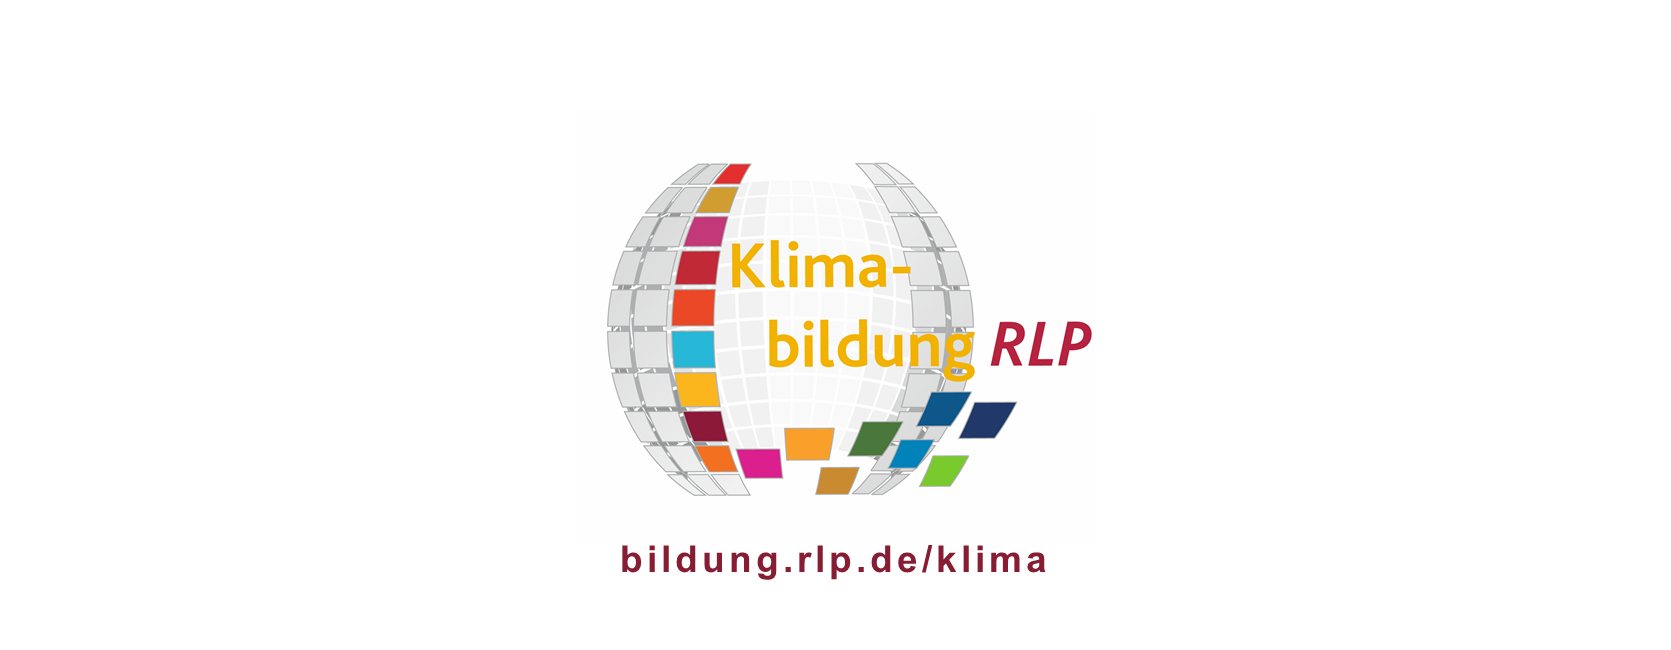 Logo und Schriftzug Klimabildung RLP und bildung.rlp.de/klima